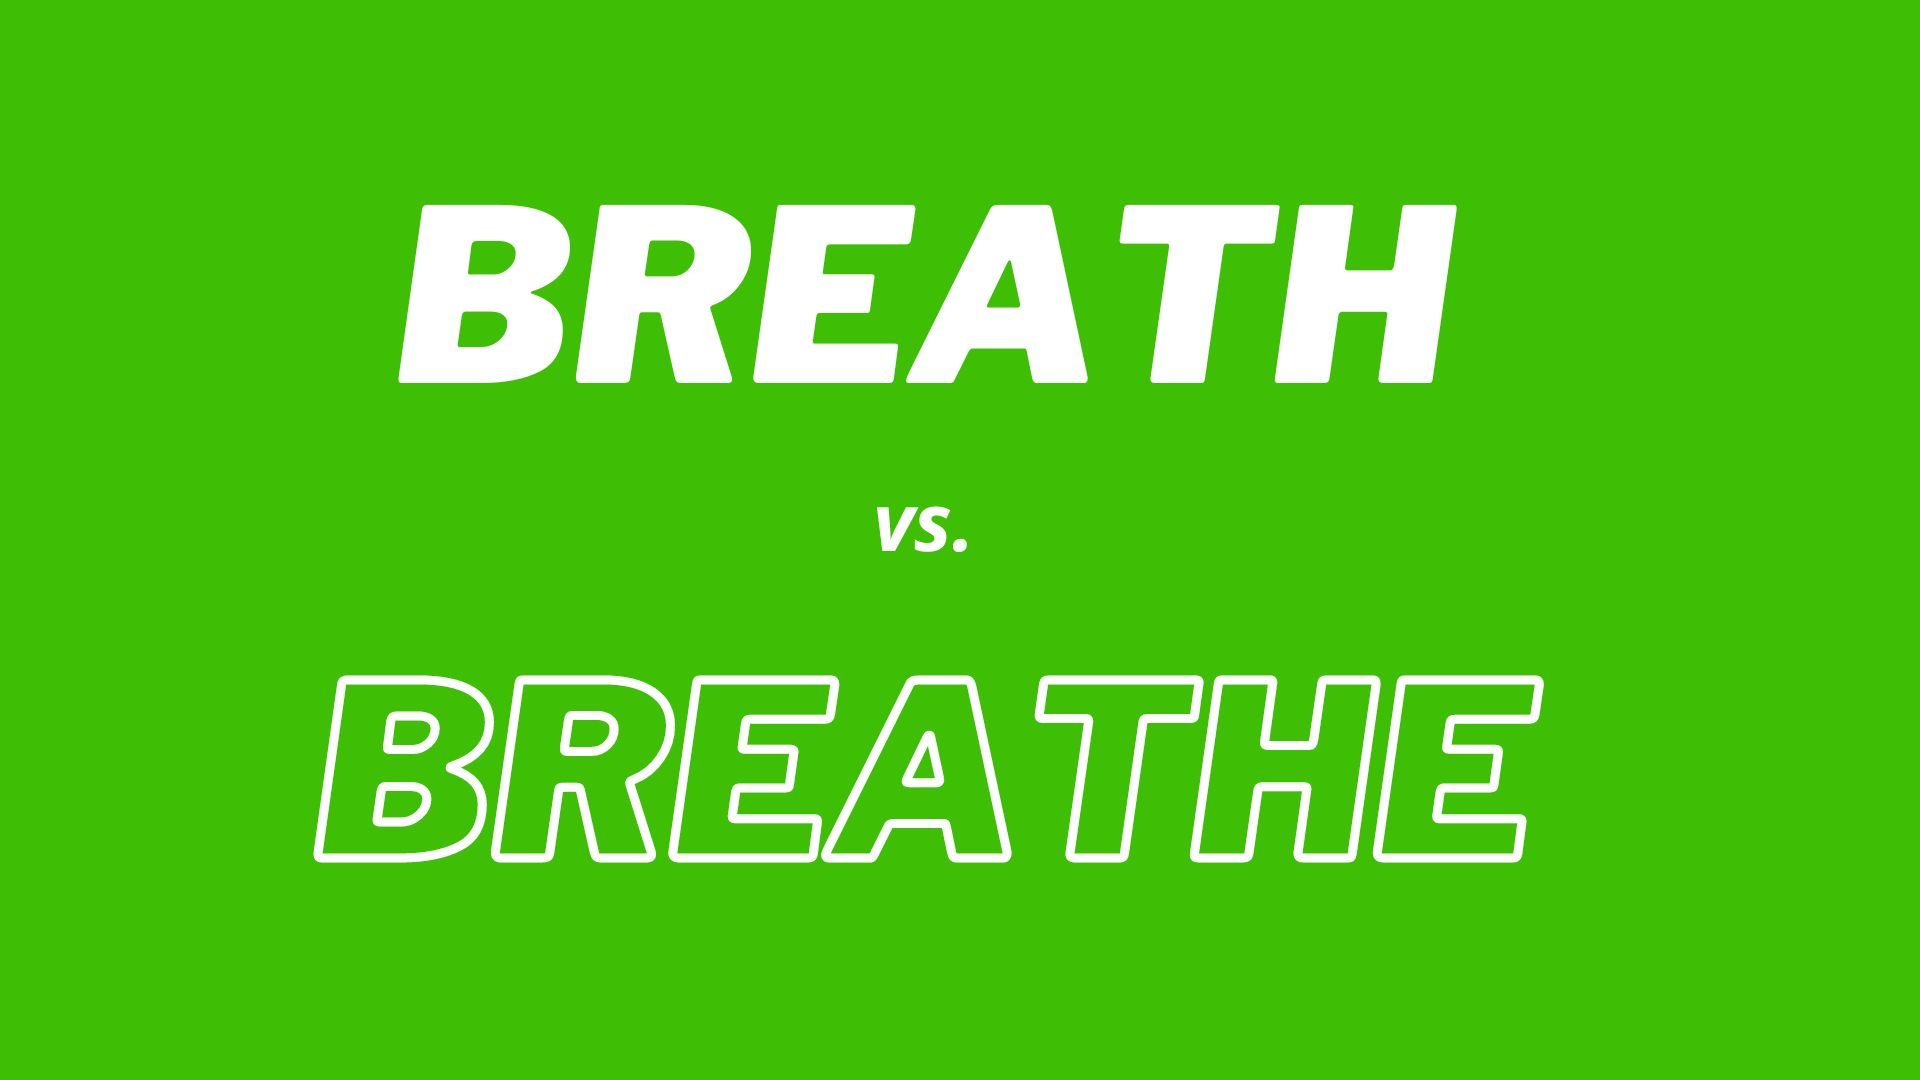 単語 "Breath" と "Breathe" の視覚比較と定義。